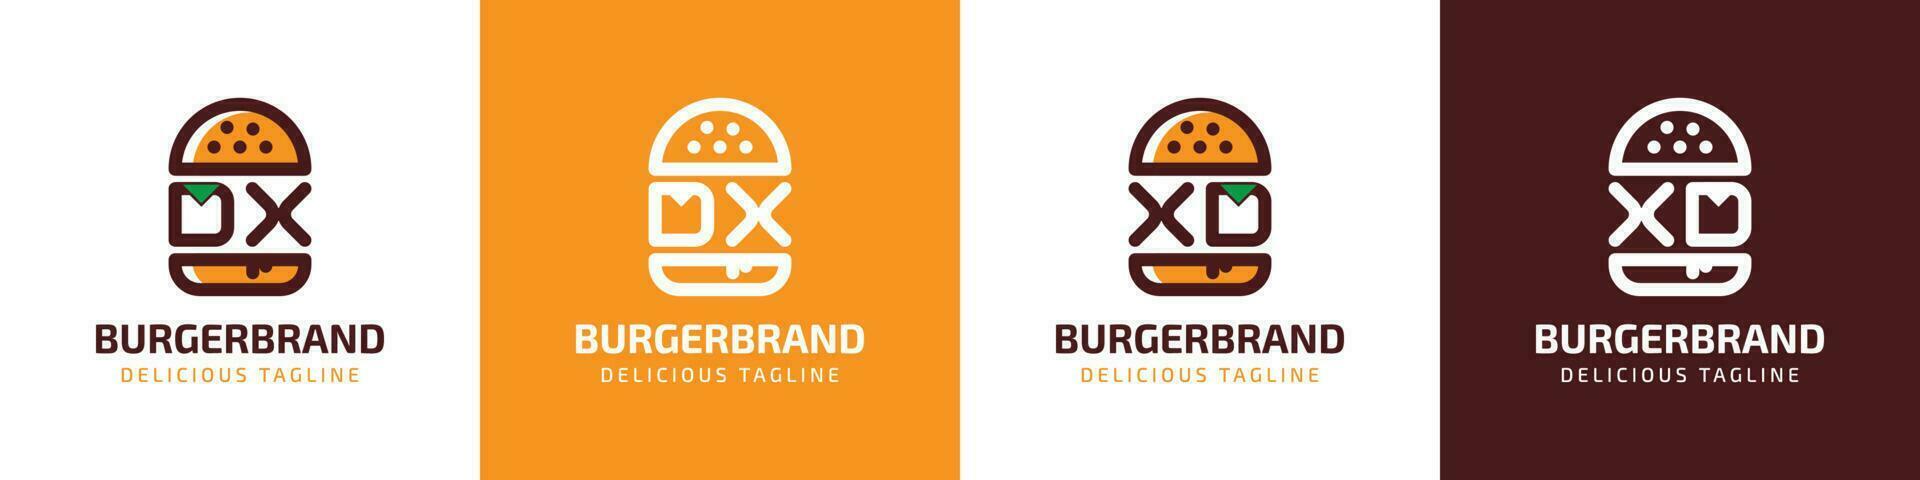 lettre dx et xd Burger logo, adapté pour tout affaires en relation à Burger avec dx ou xd initiales. vecteur